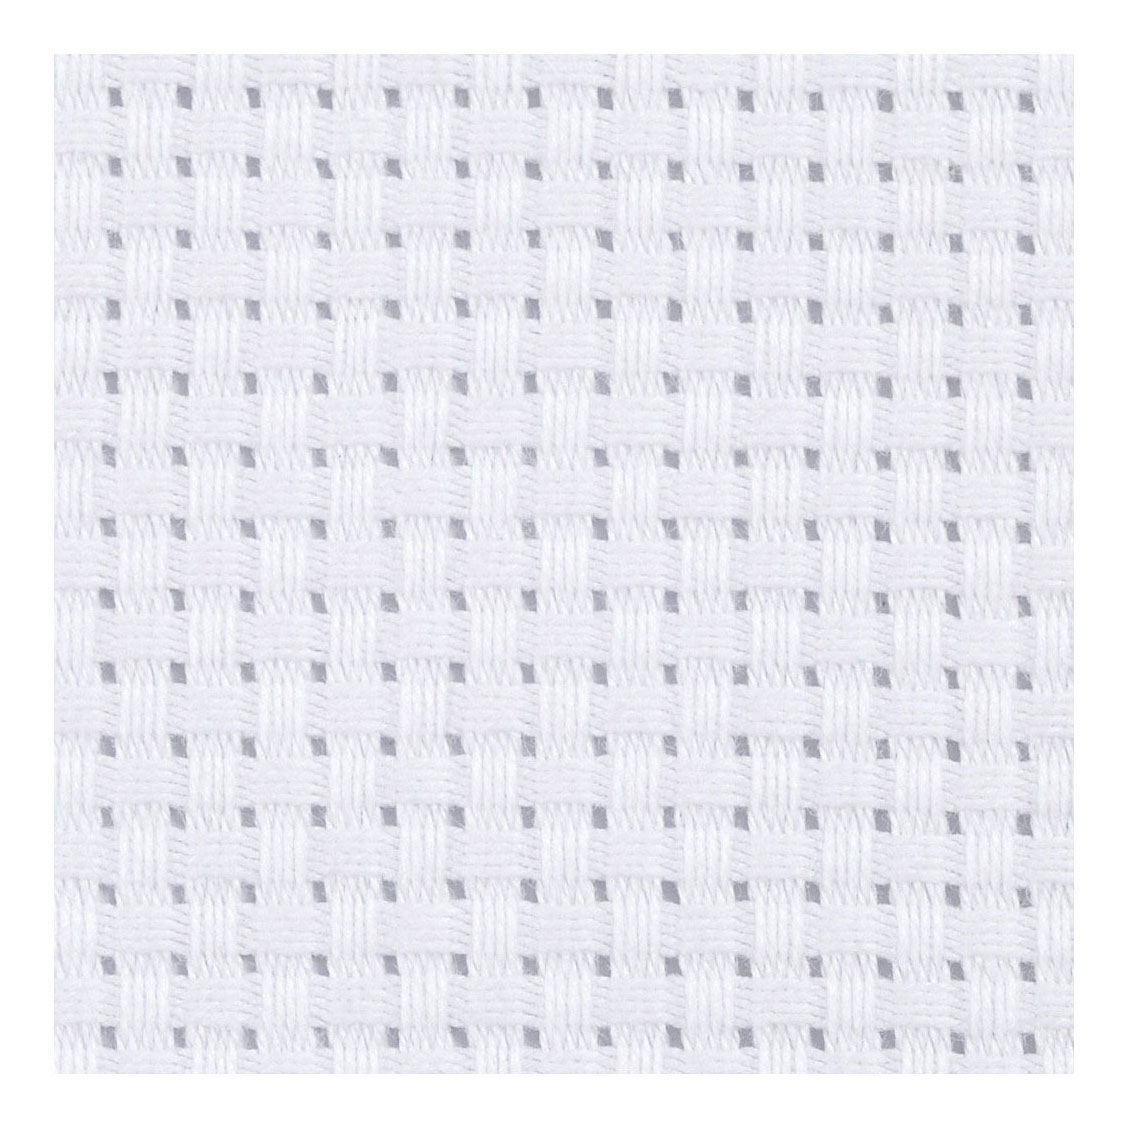 Aida-Weiß, 35 Quadrate pro 10 cm, 50 x 50 cm